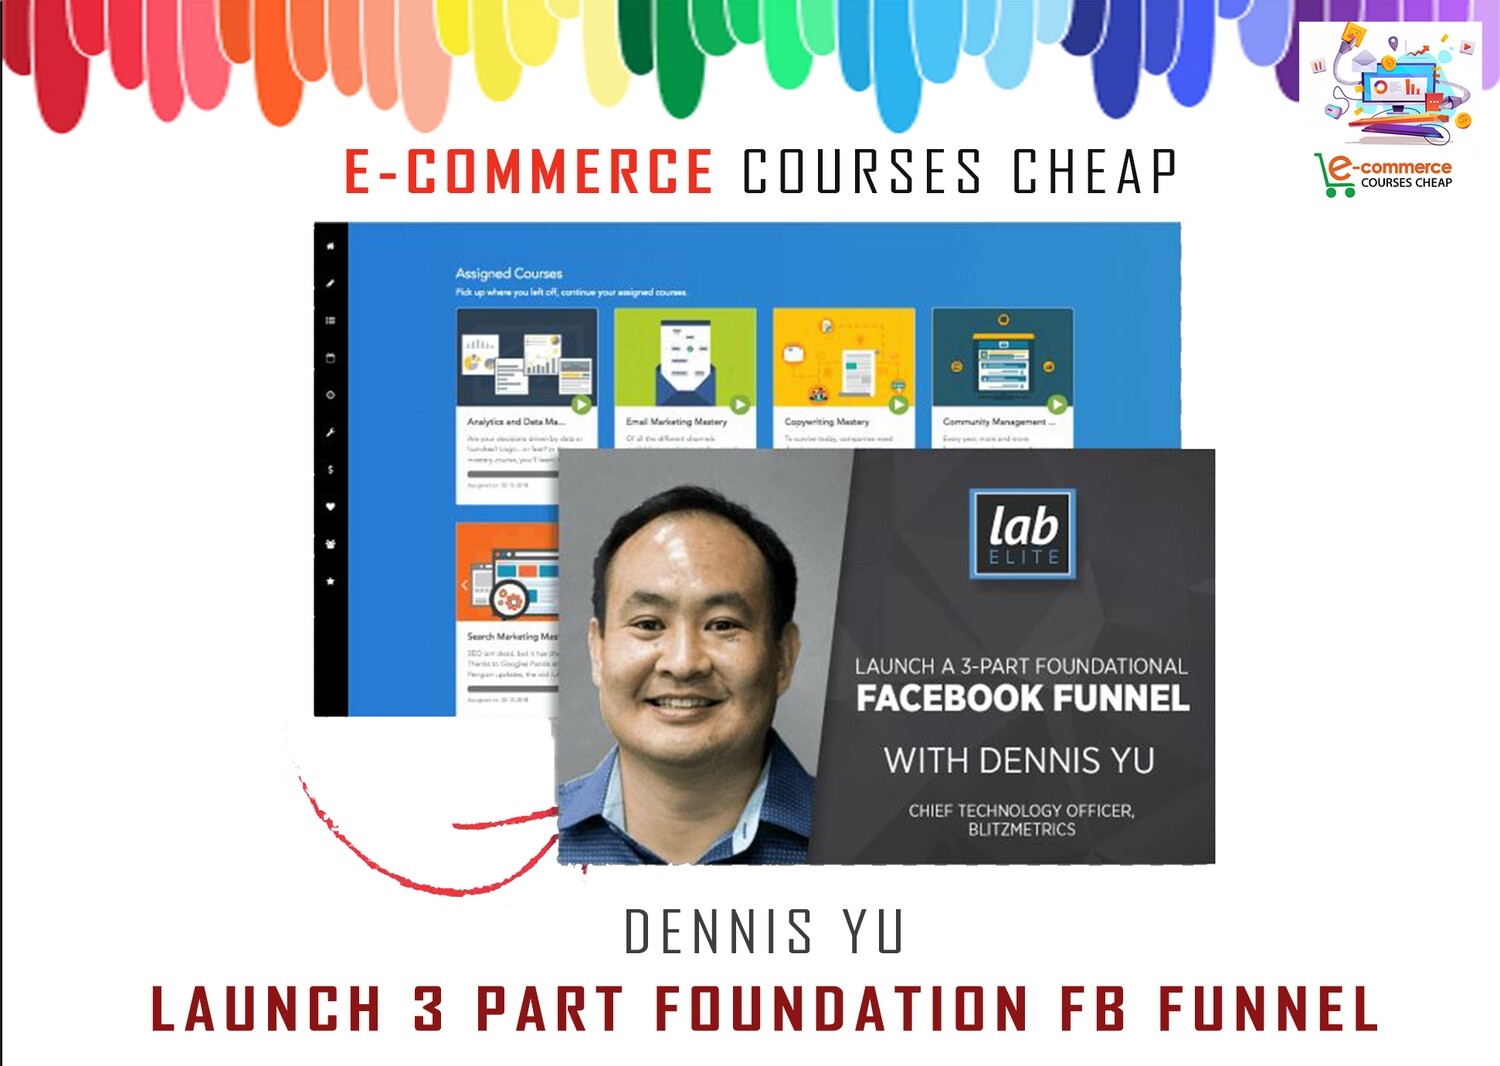 Dennis Yu - Launch 3 Part Foundation FB Funnel